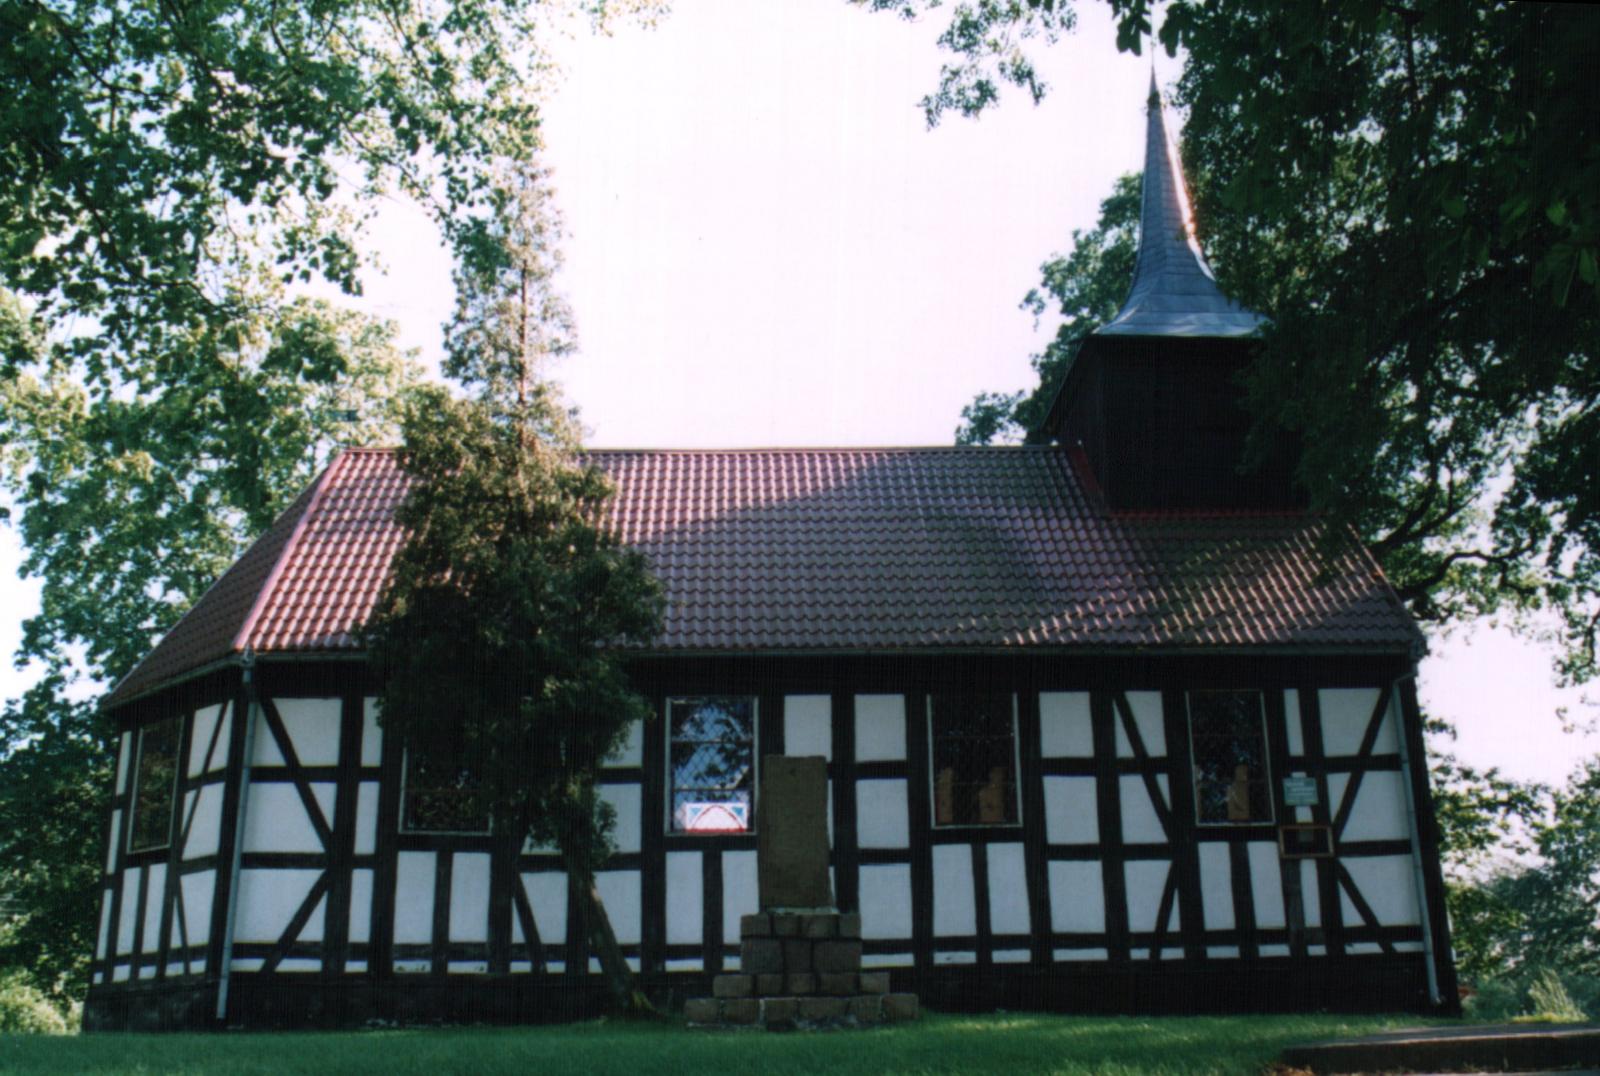 Fot.: Bukowina, Kościół, źródło: Wikipedia, autor: Steinchen1971